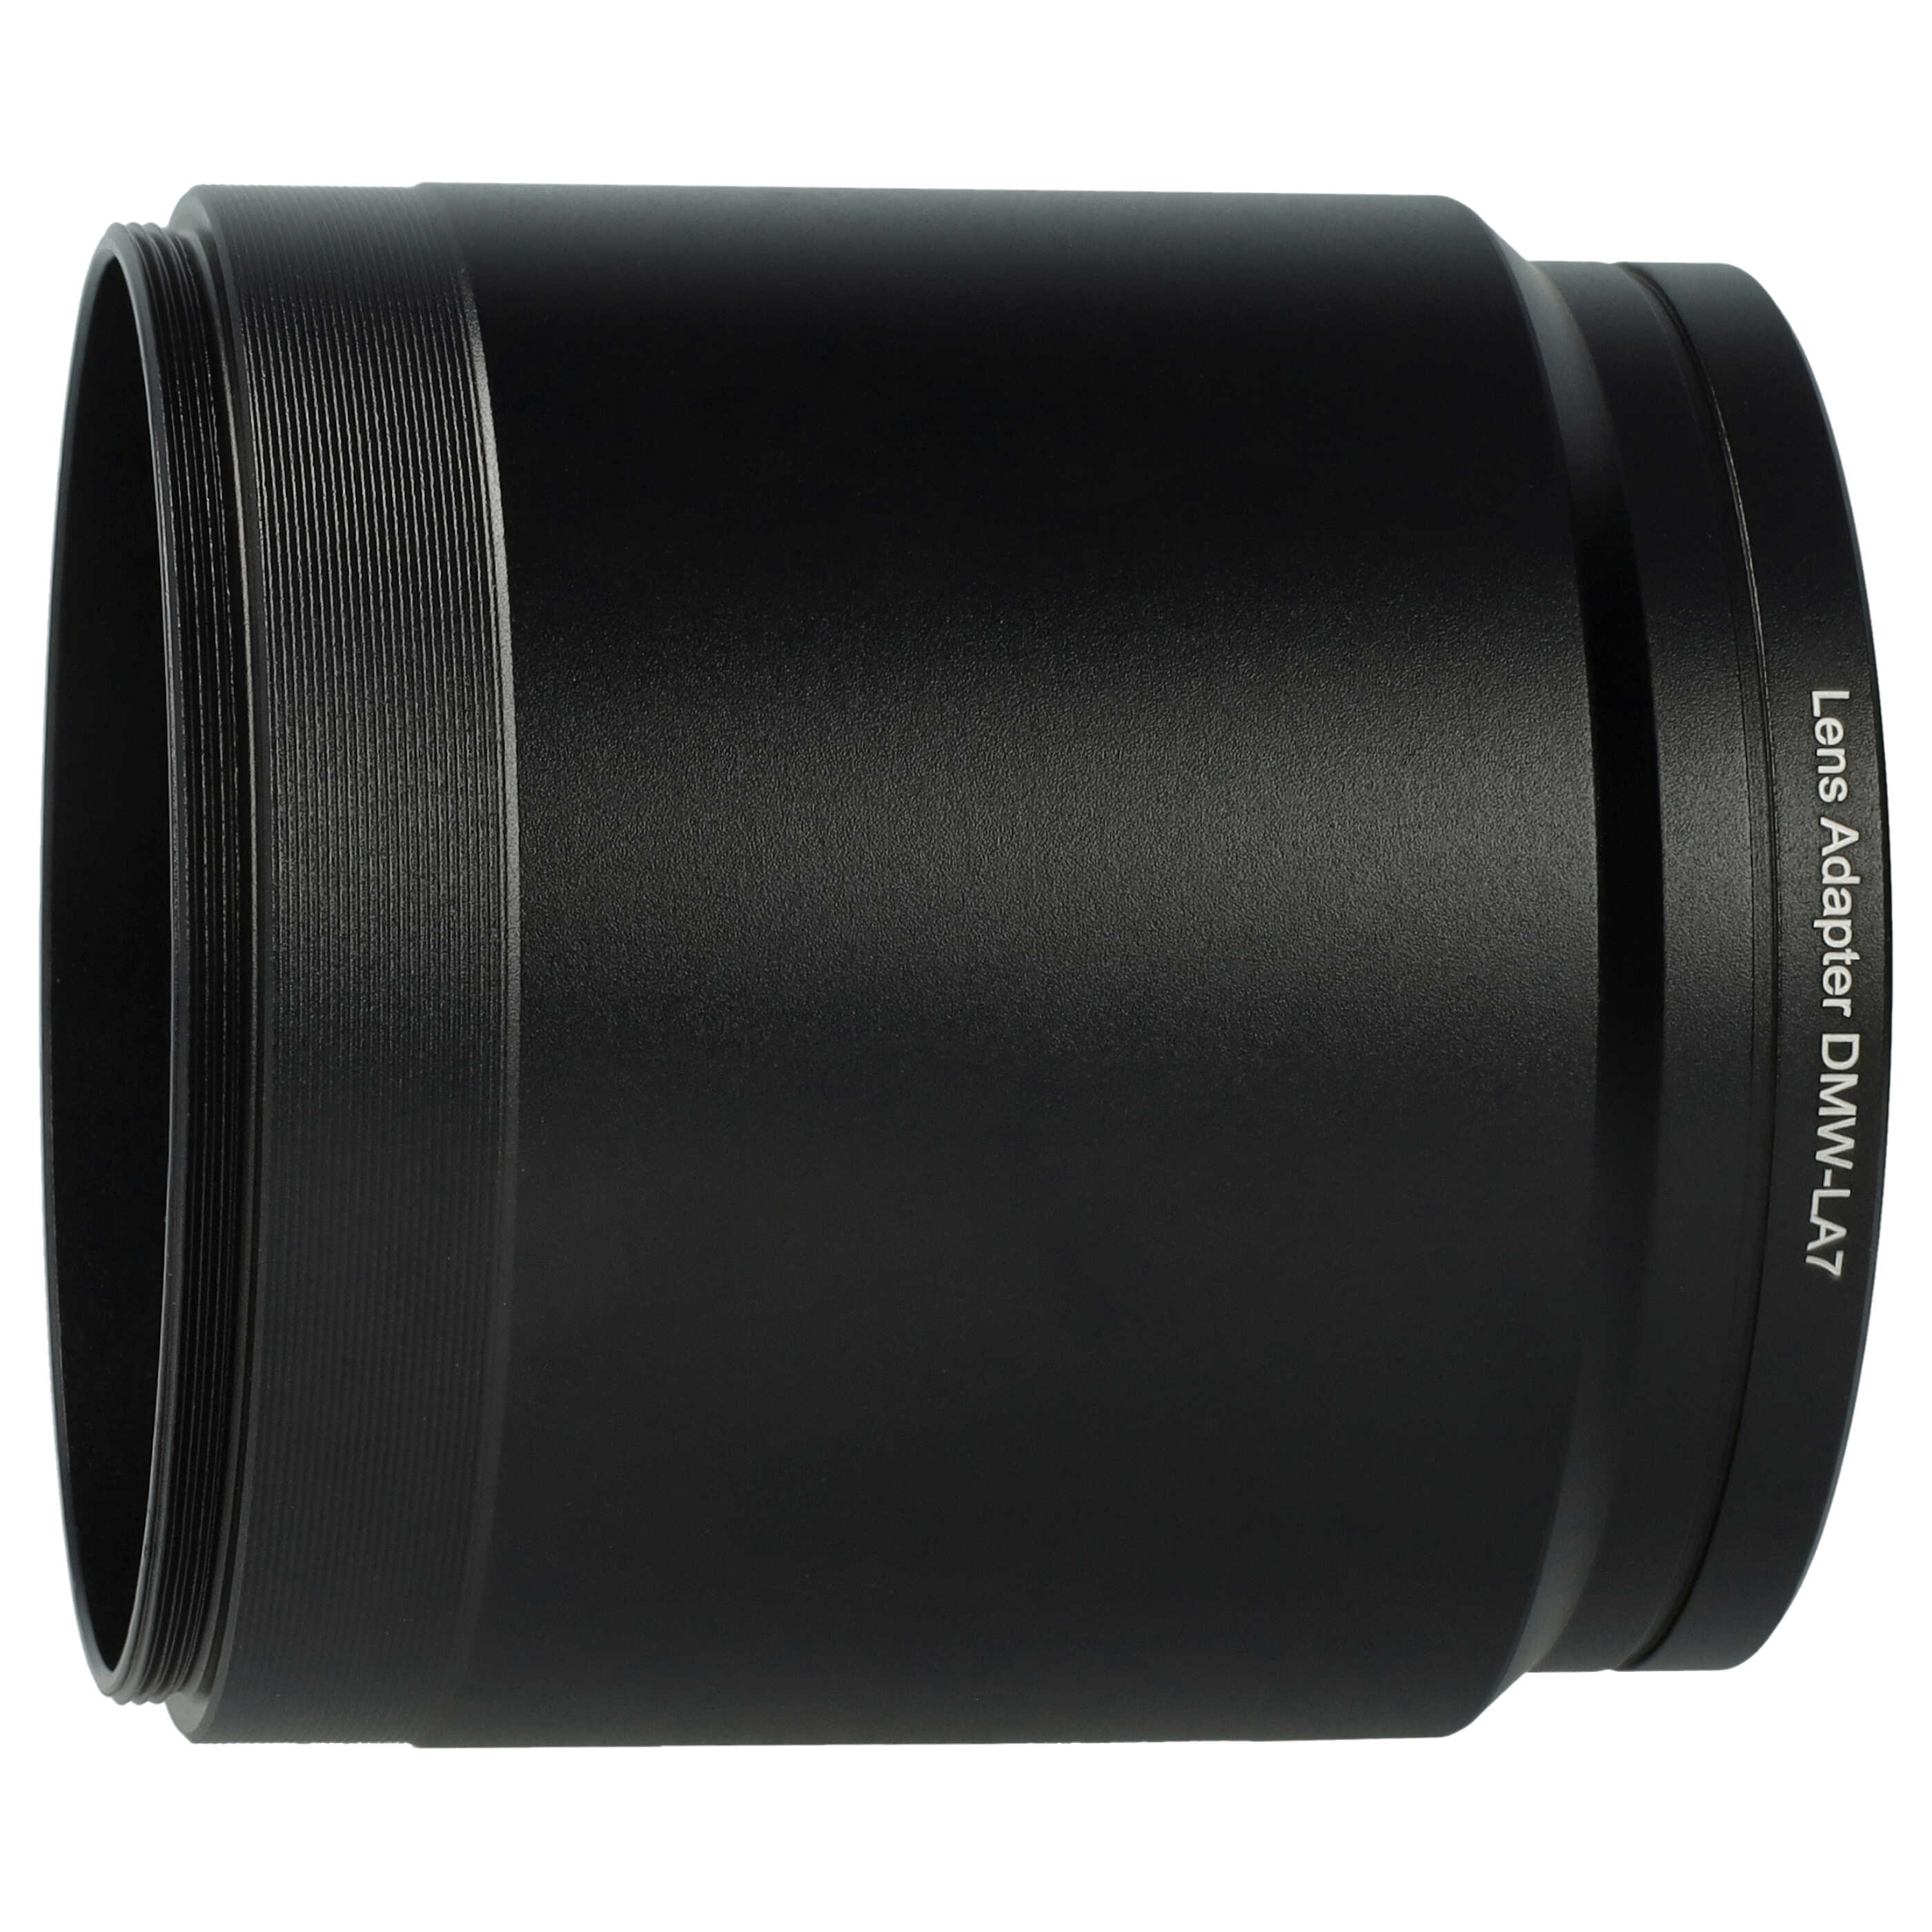 Redukcja filtrowa 55 mm do obiektywu aparatu Lumix DMC-FZ300